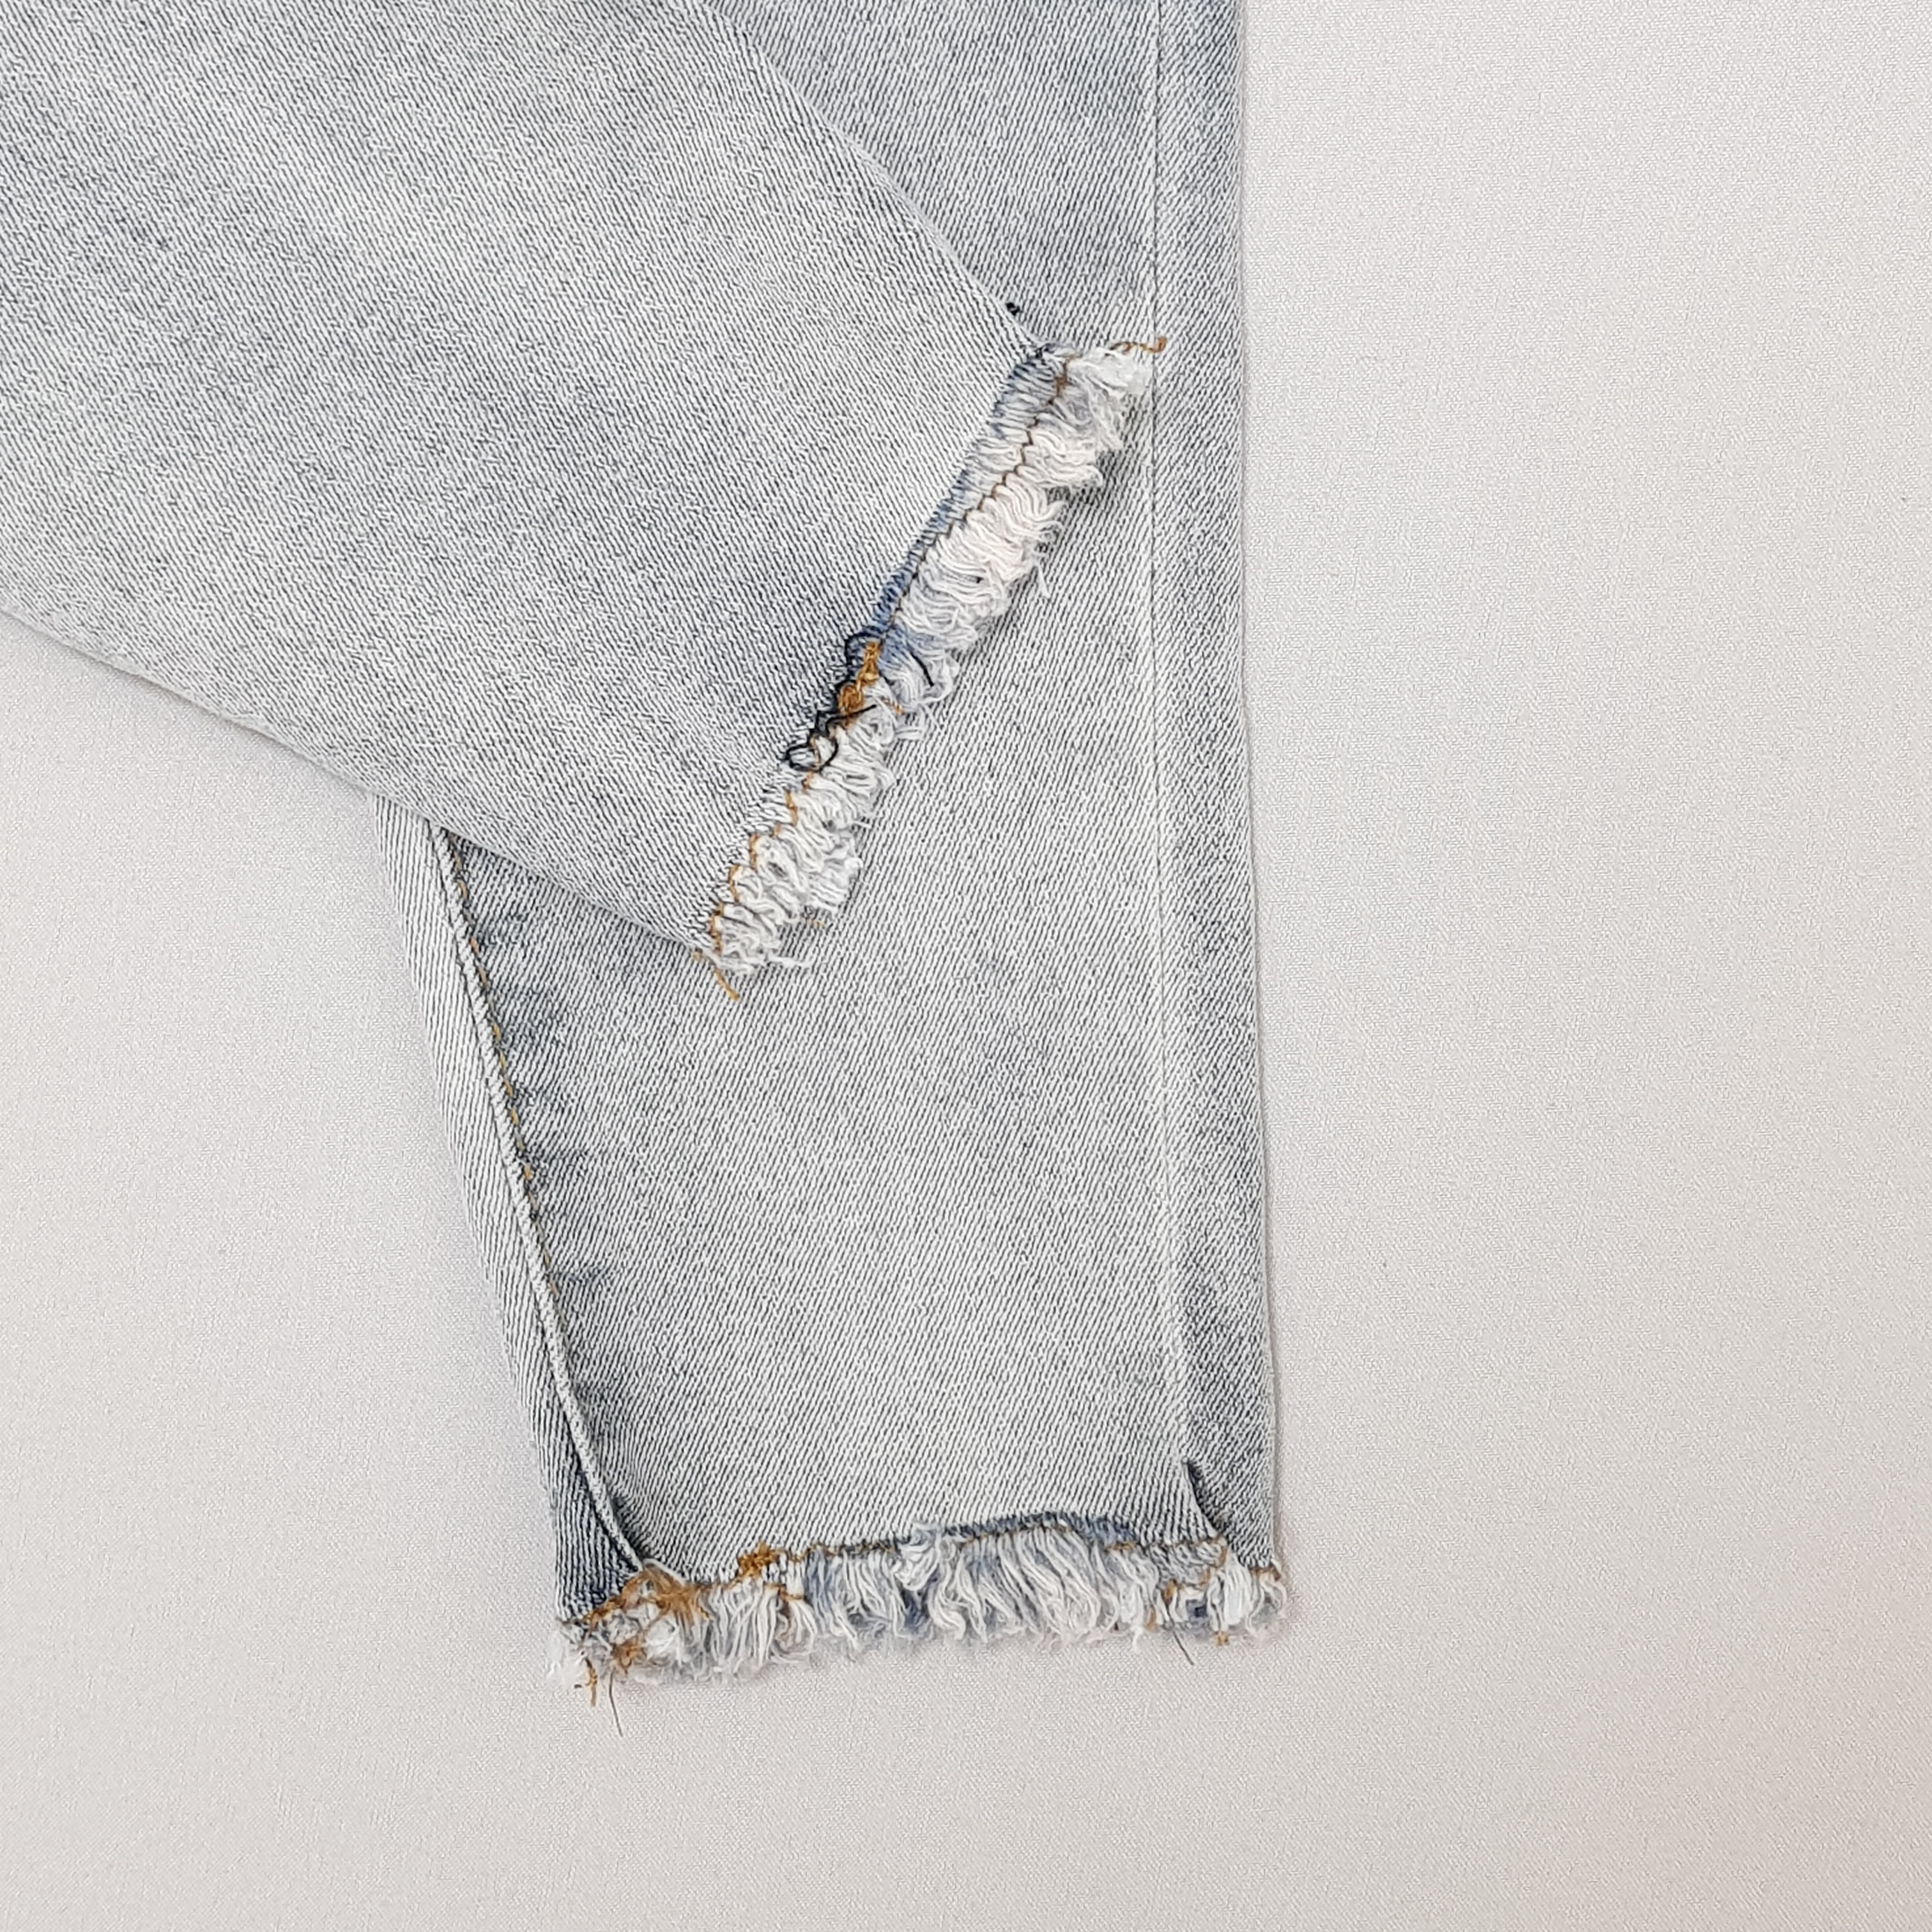 شلوار جینز دخترانه 40702 سایز 2 تا 14 سال مارک Cotton Kids   *